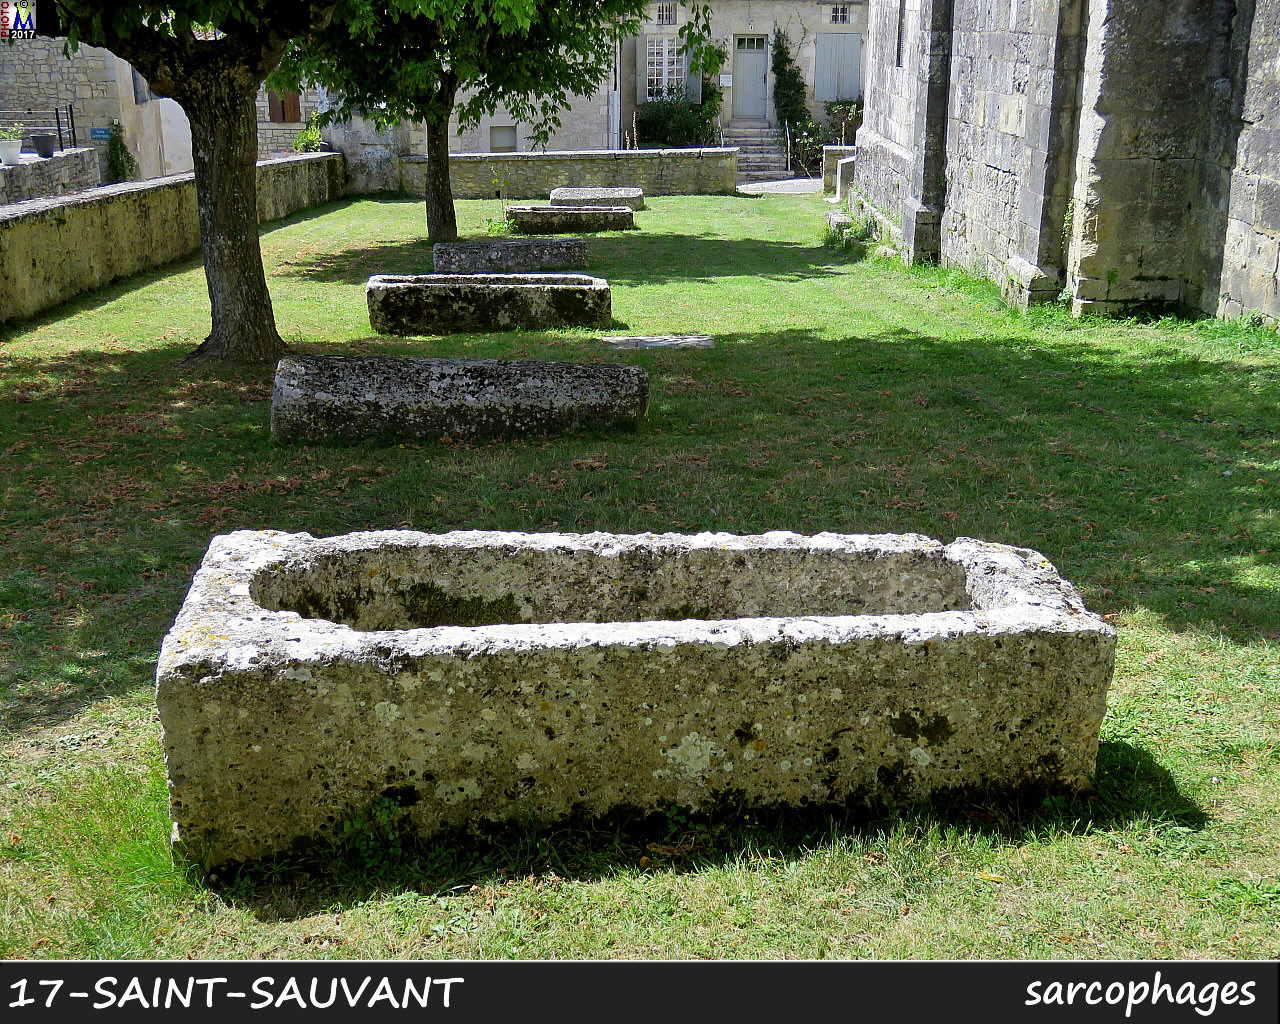 17StSAUVANT_sarcophage_1000.jpg